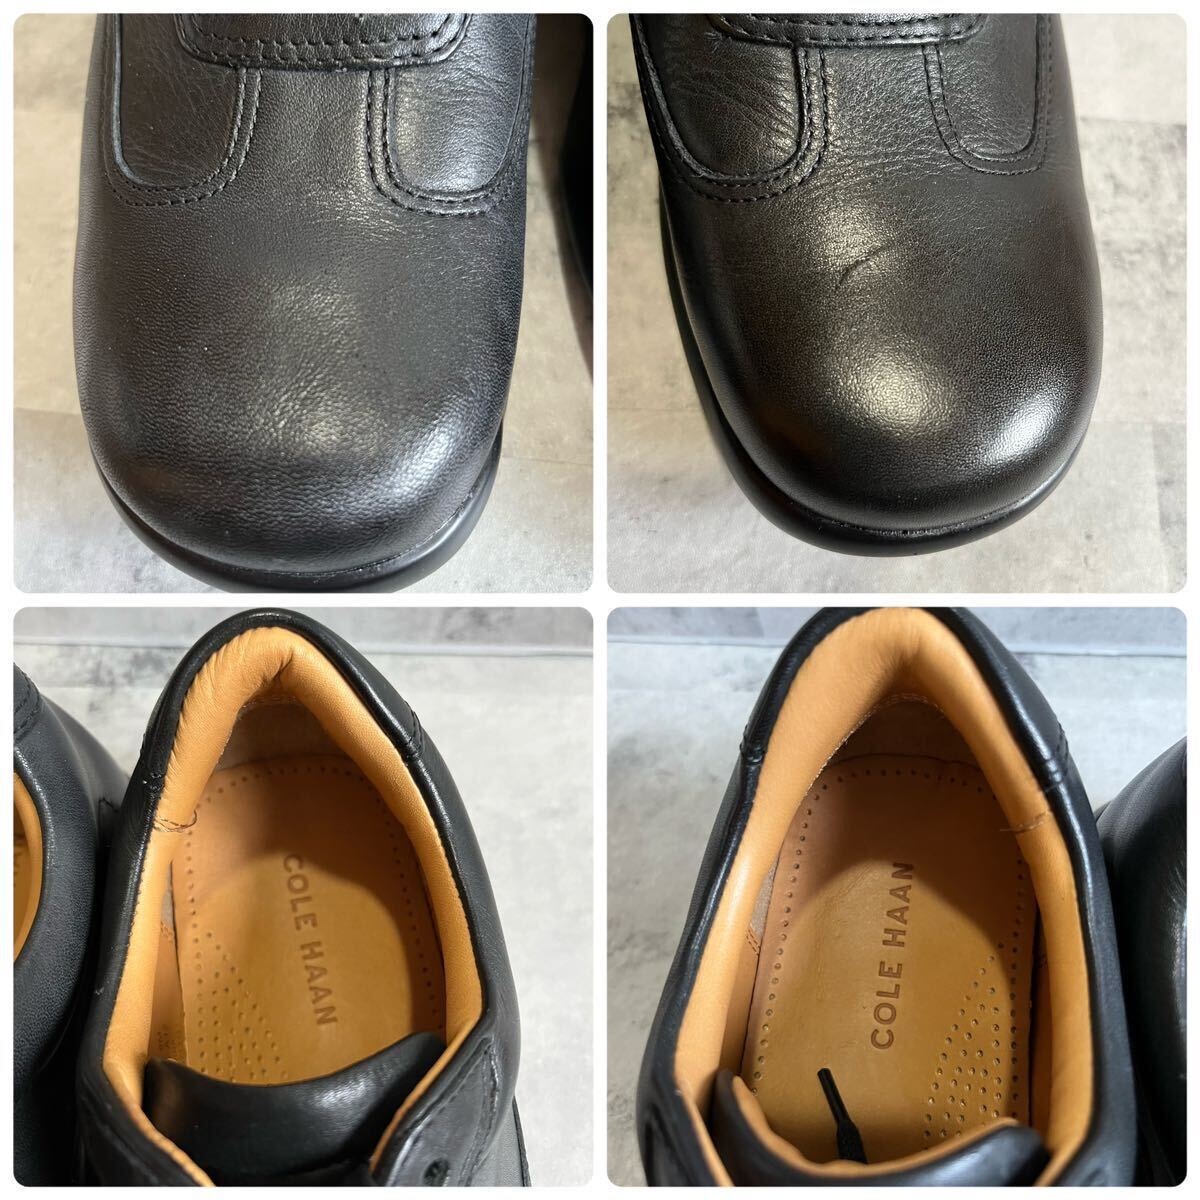 未使用品 コールハーン ナイキ Cole Haan NIKE スニーカータイプ革靴 26cm 本革 レザースニーカー ブラック 紳士靴 黒 ビジネスシューズ の画像5